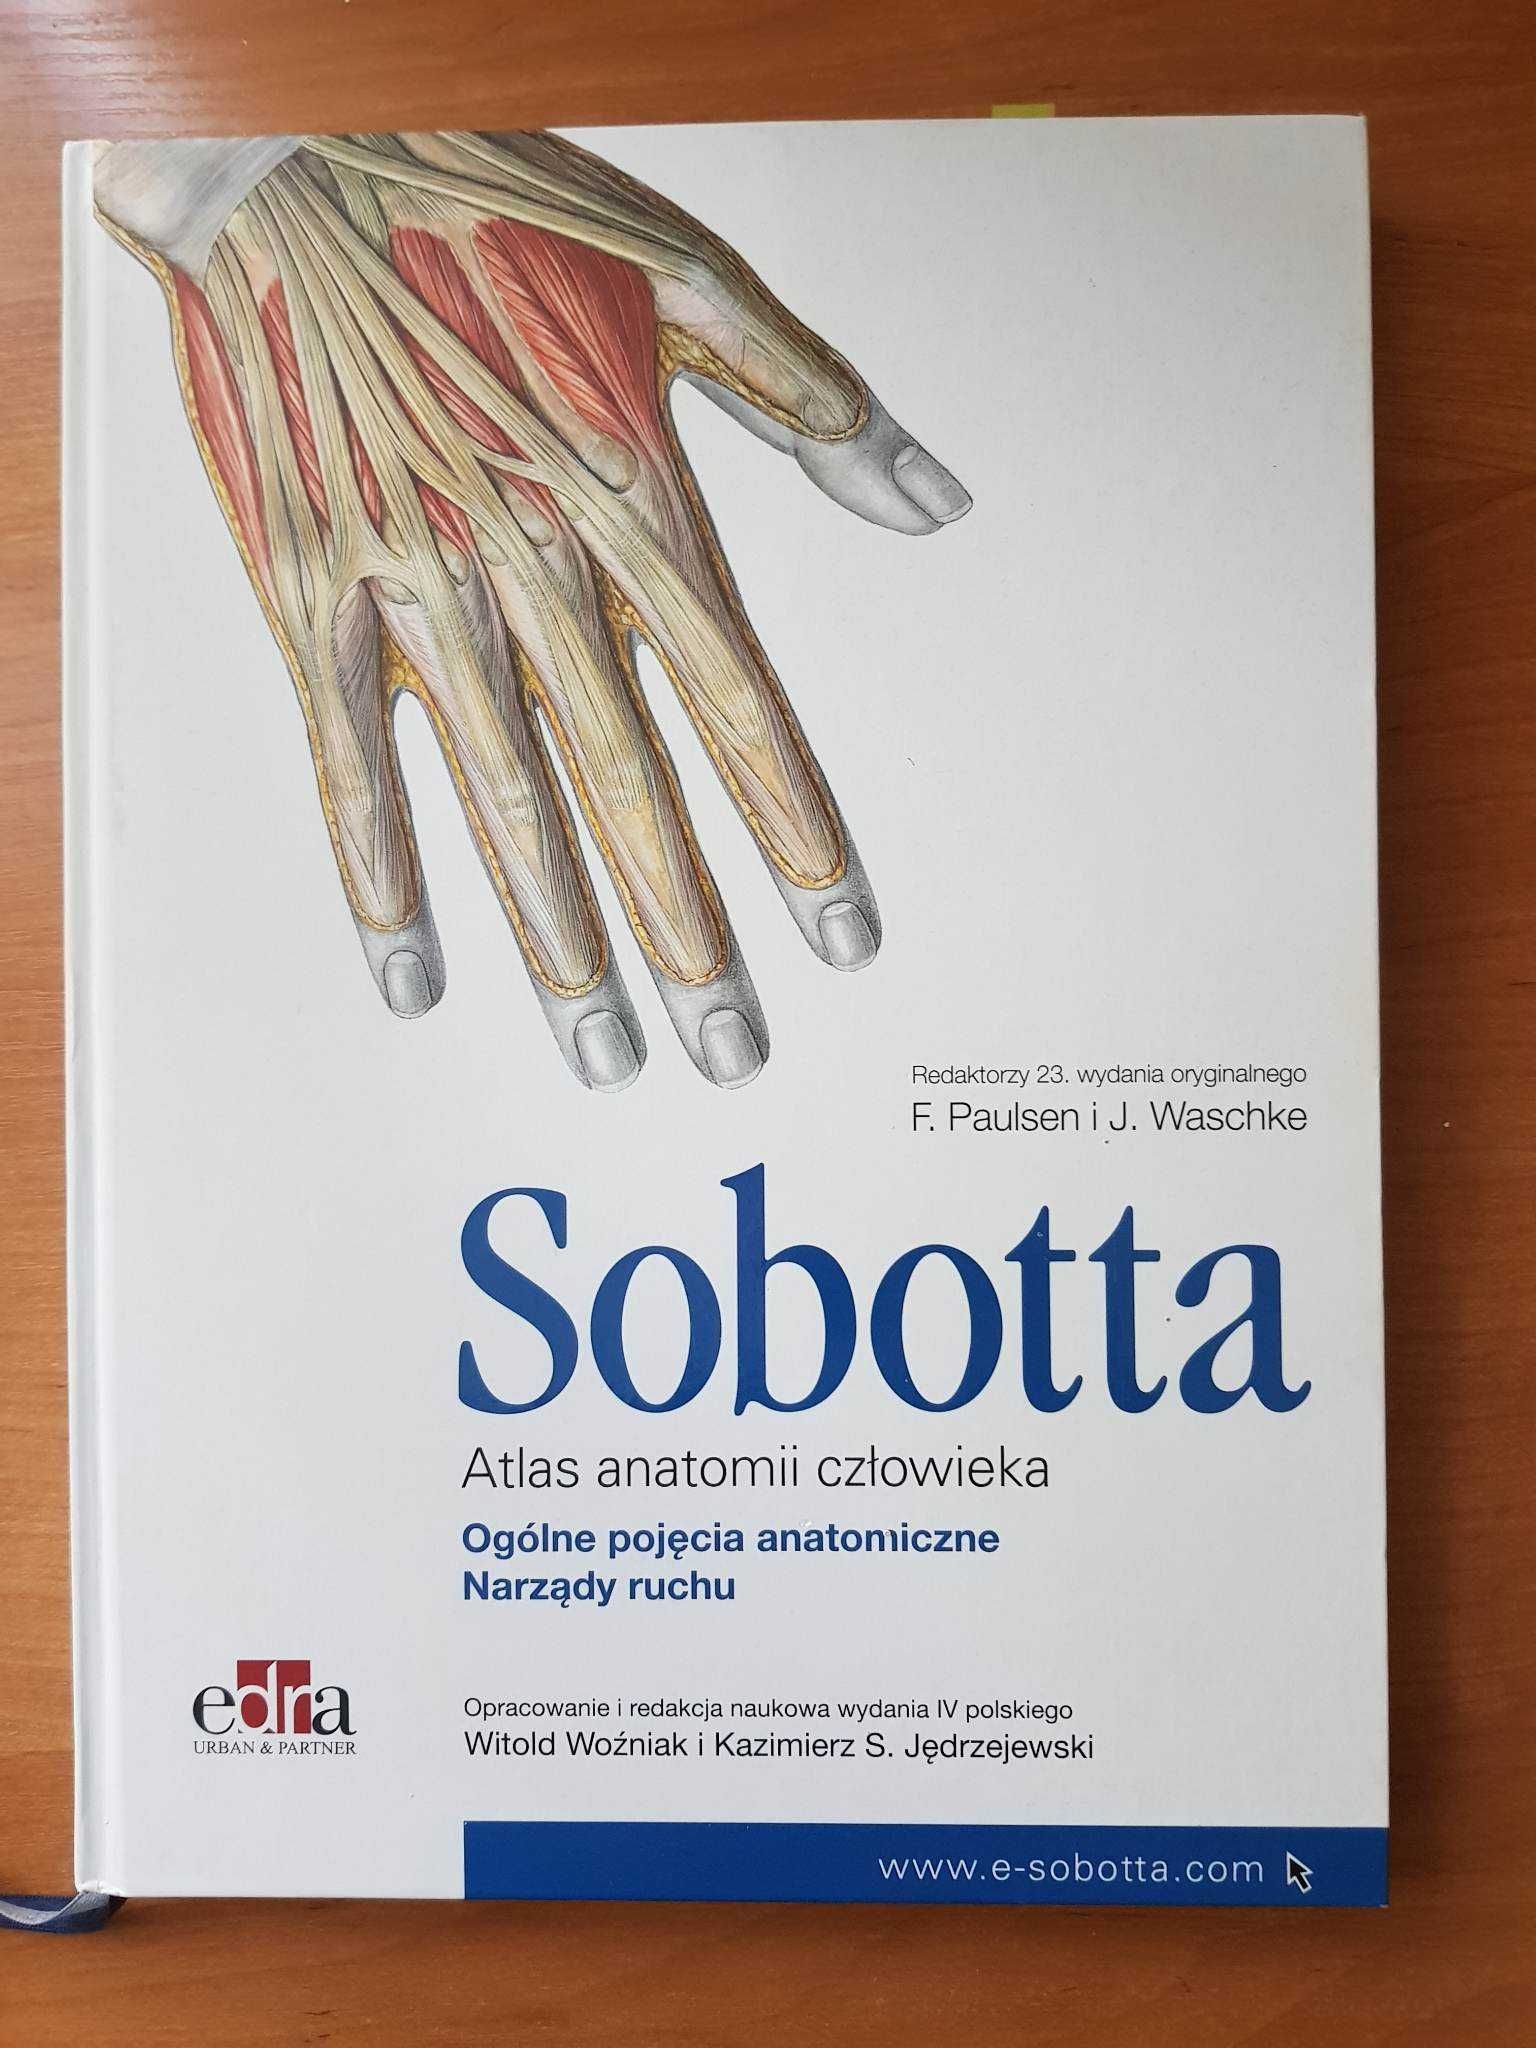 zestaw 3xSOBOTTA Atlas anatomii człowieka wyd.IV Polski-narządy, głowa